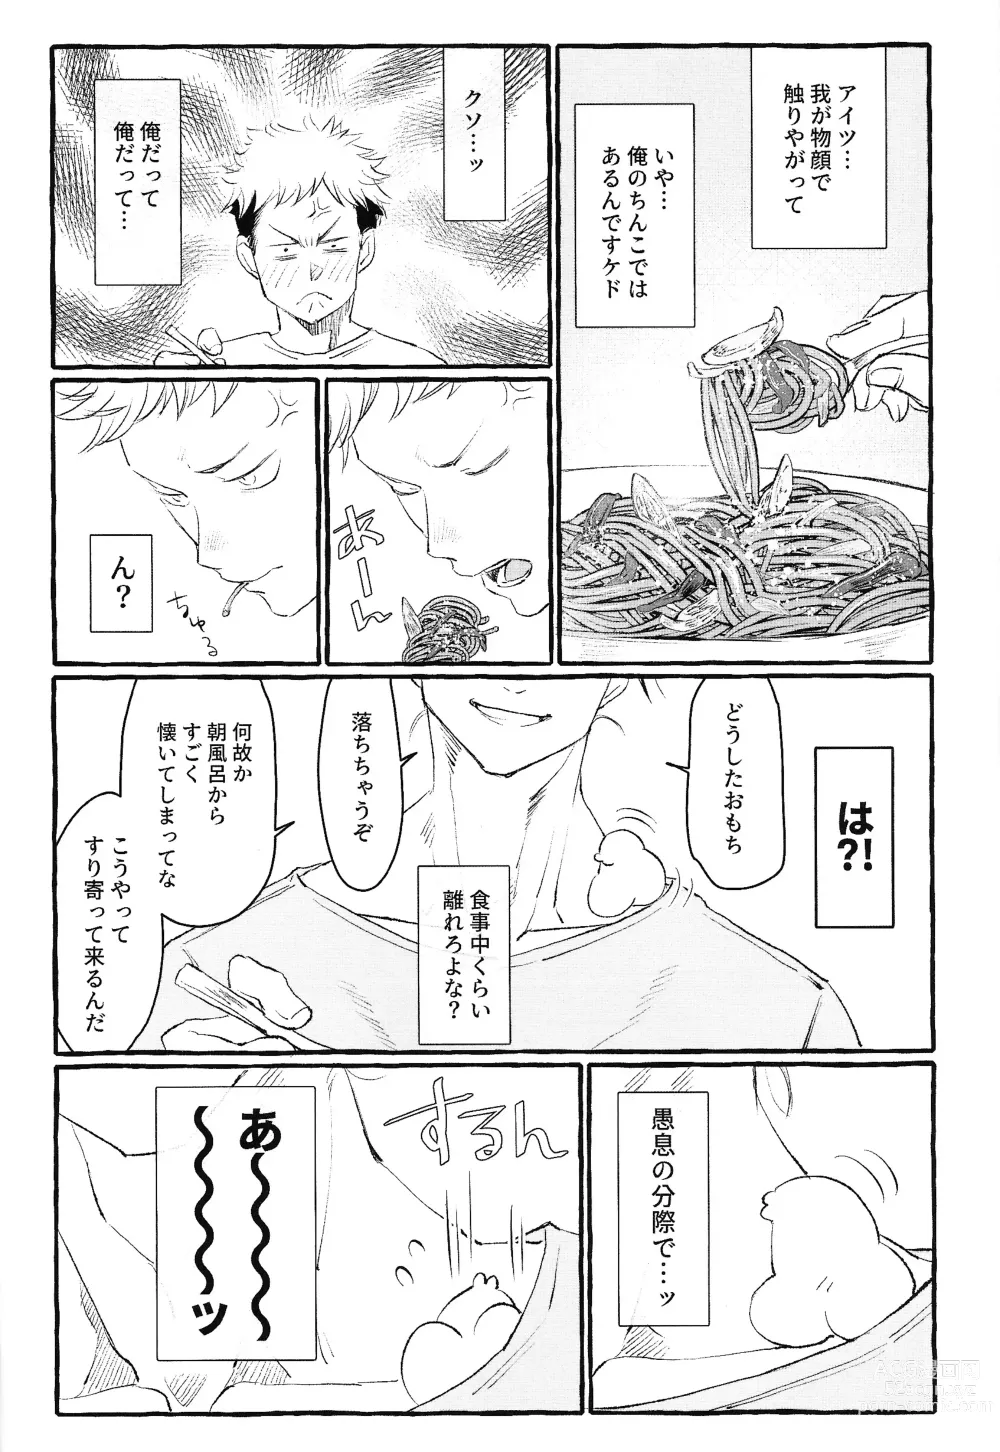 Page 31 of doujinshi Otouto no Kimochi